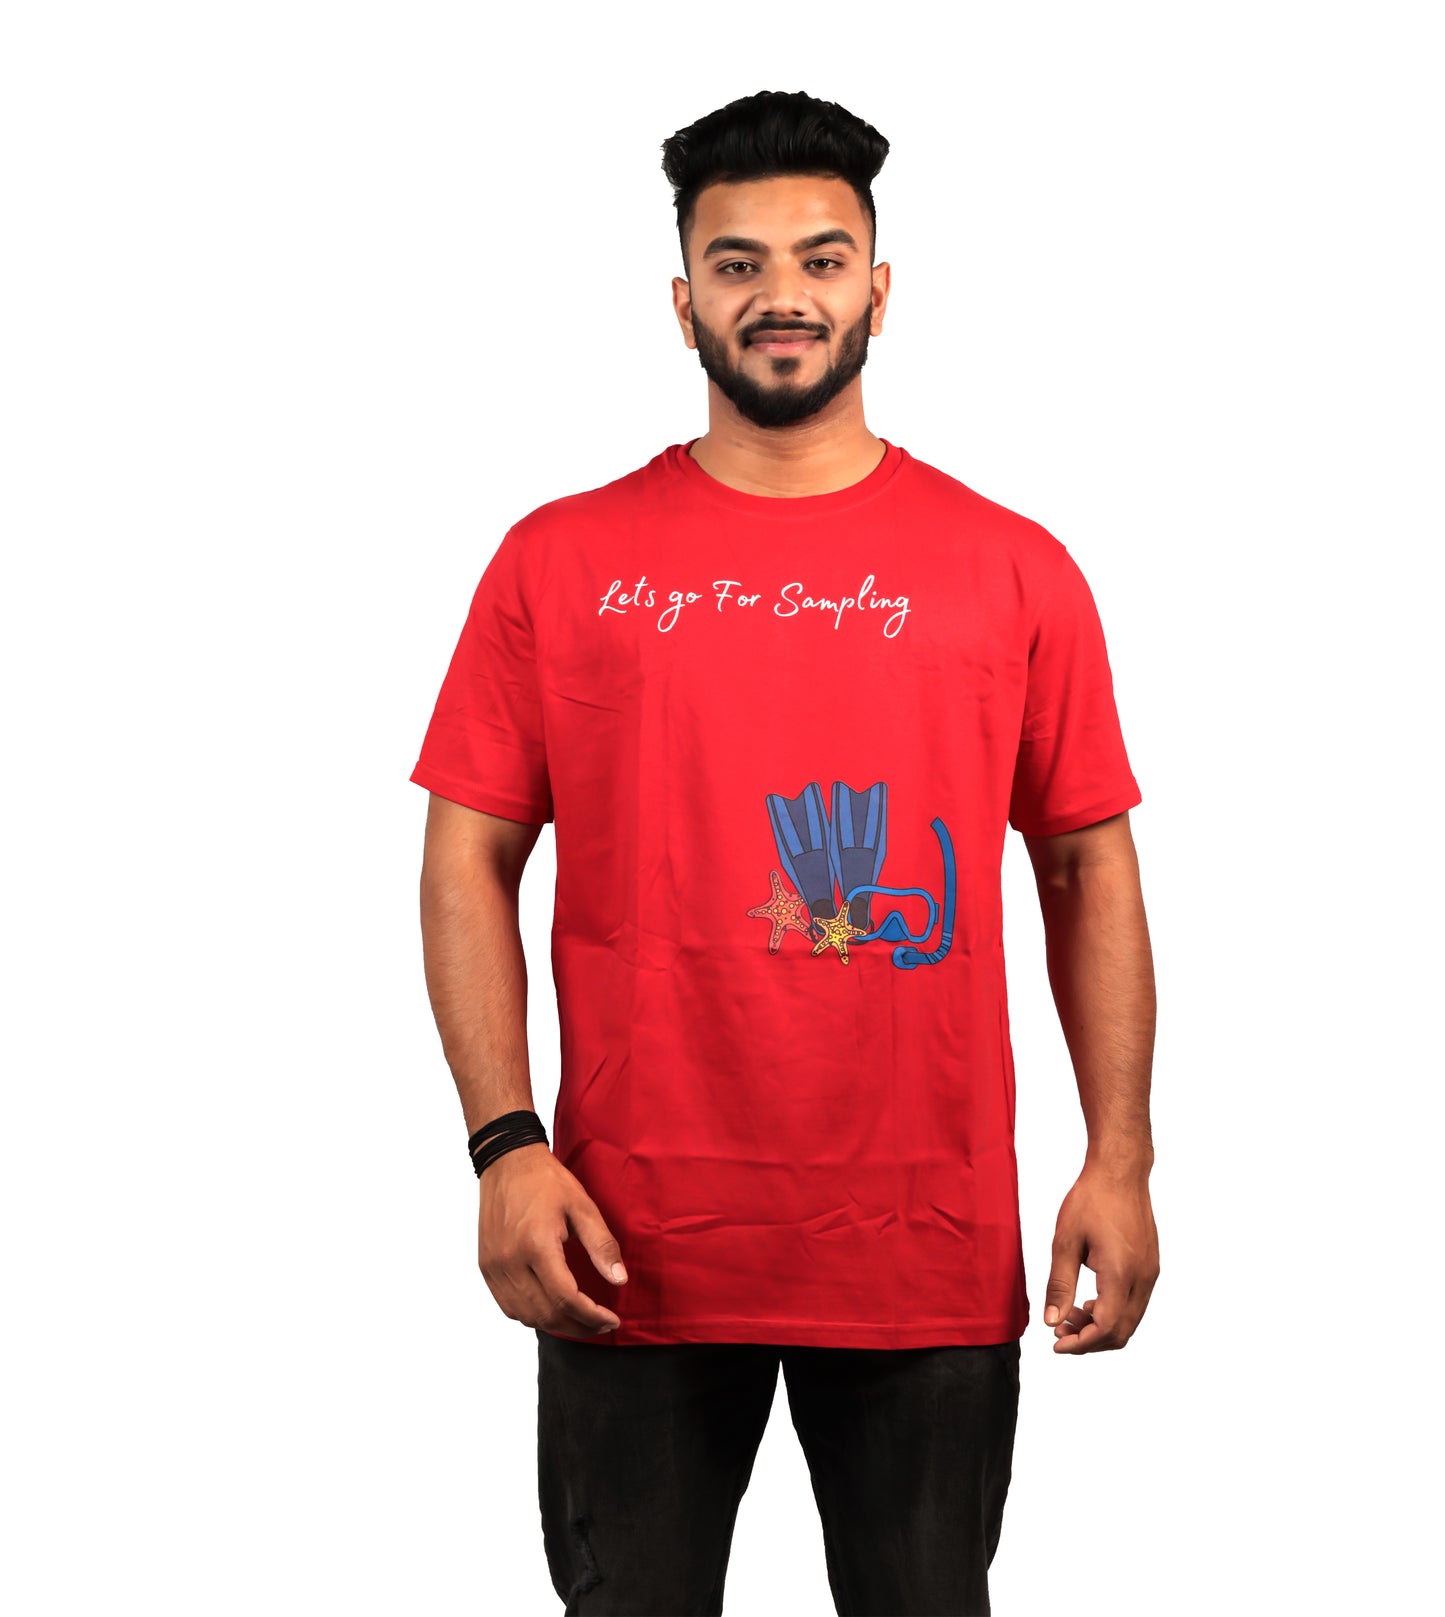 Lets Go For Sampling T-shirt In Red Color For Men